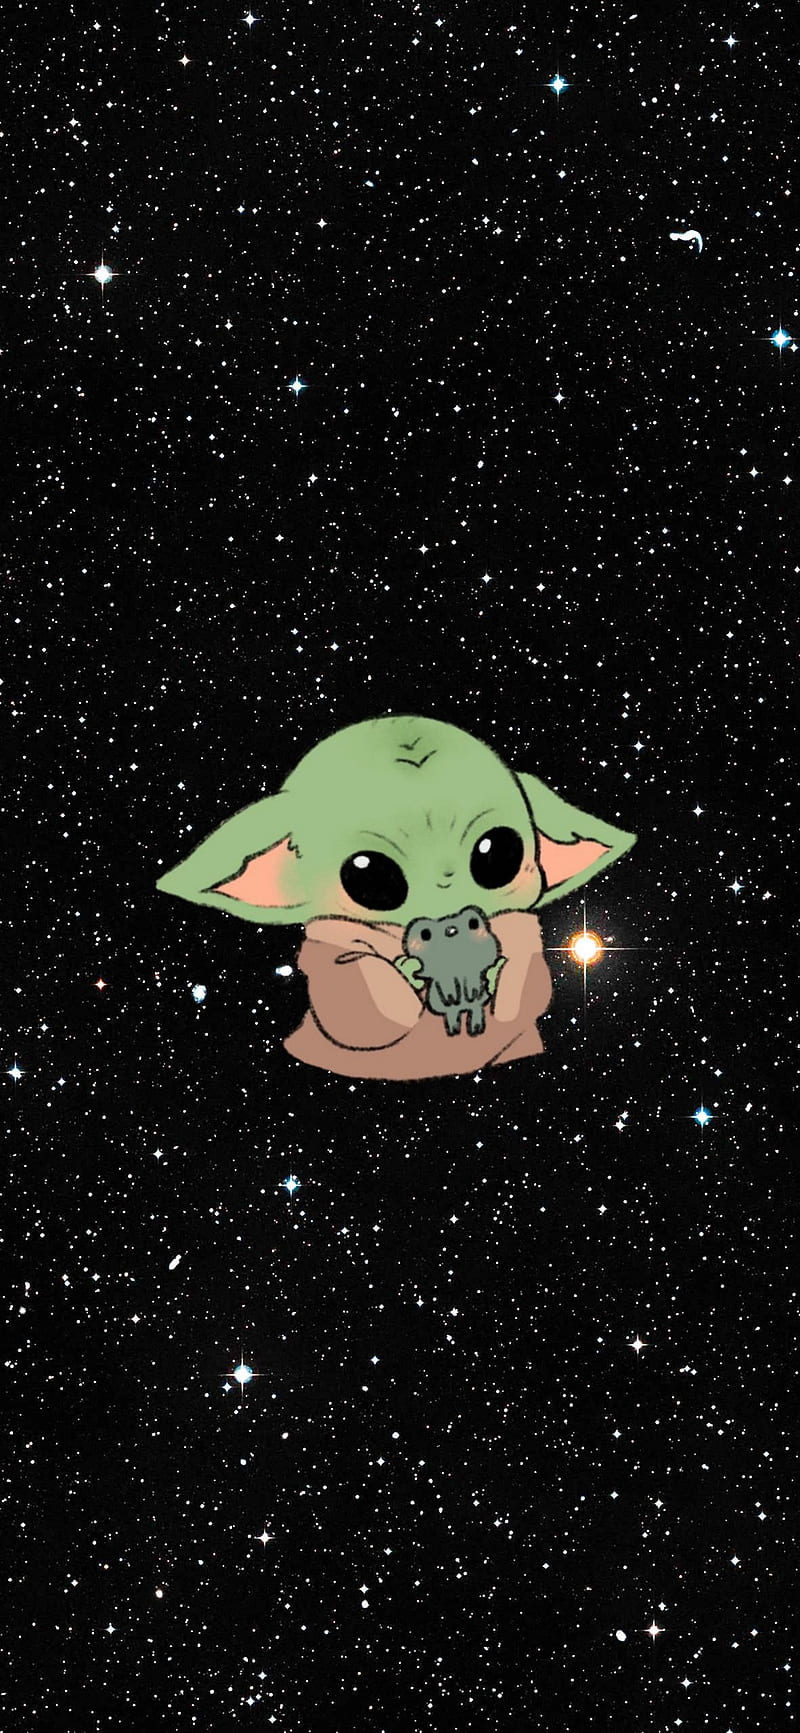 Vũ trụ xa xôi với những ngôi sao lấp lánh, bỗng trở nên đáng yêu hơn bao giờ hết với hình ảnh Baby Yoda trên nền đen sao. Hãy ngắm nhìn và cảm nhận sức hút mạnh mẽ của Yoda trong không gian vô tận này nhé!